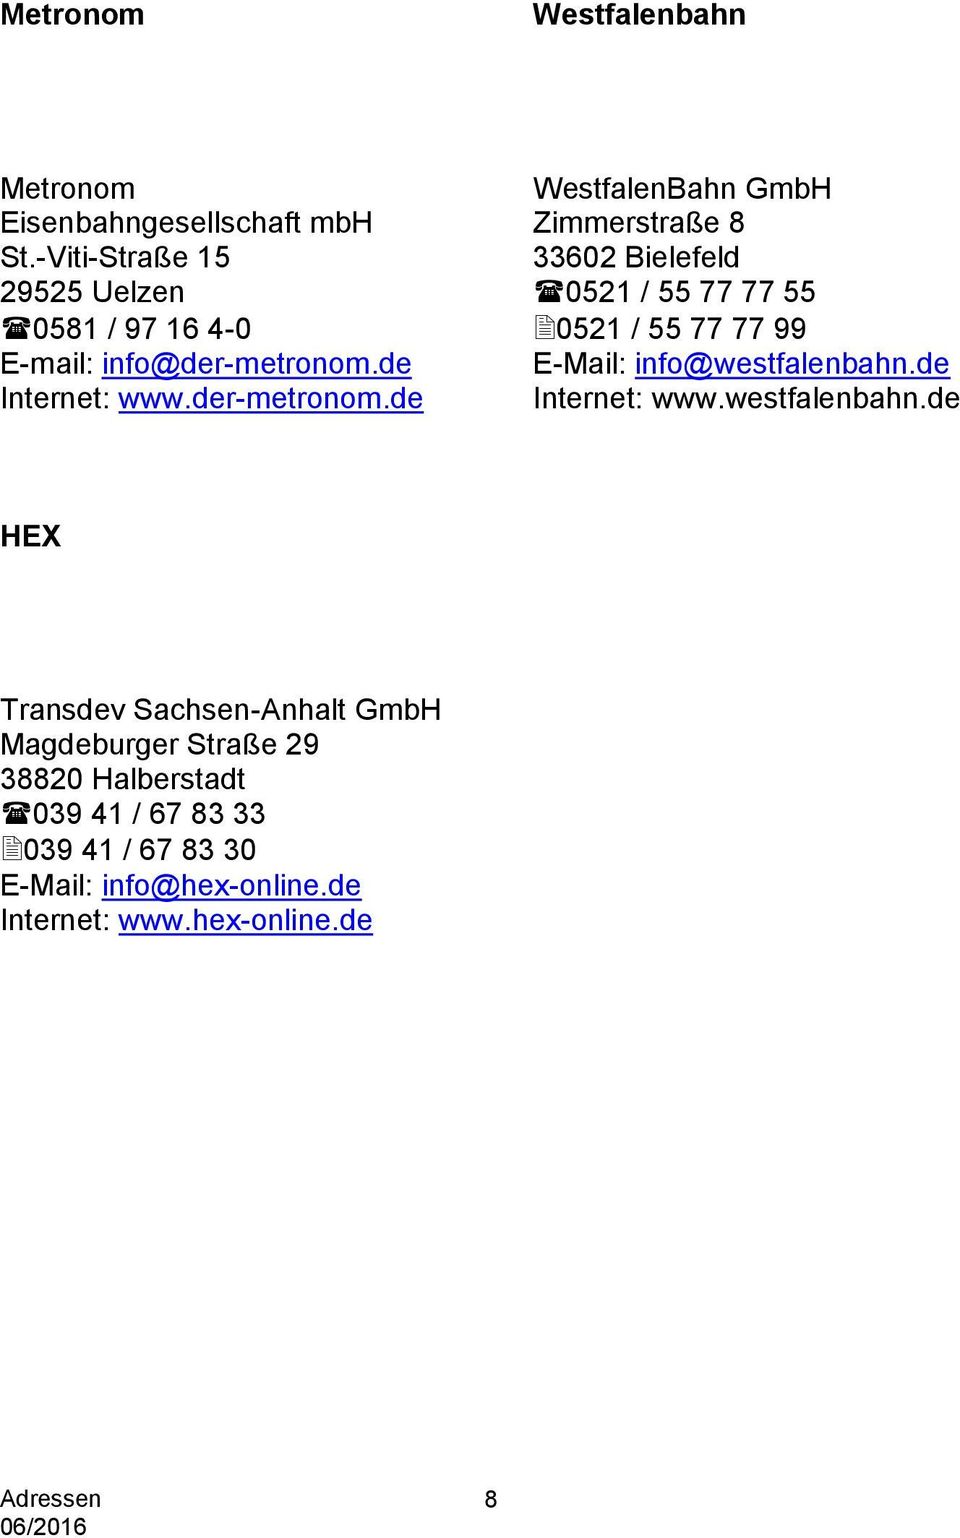 info@der-metronom.de E-Mail: info@westfalenbahn.